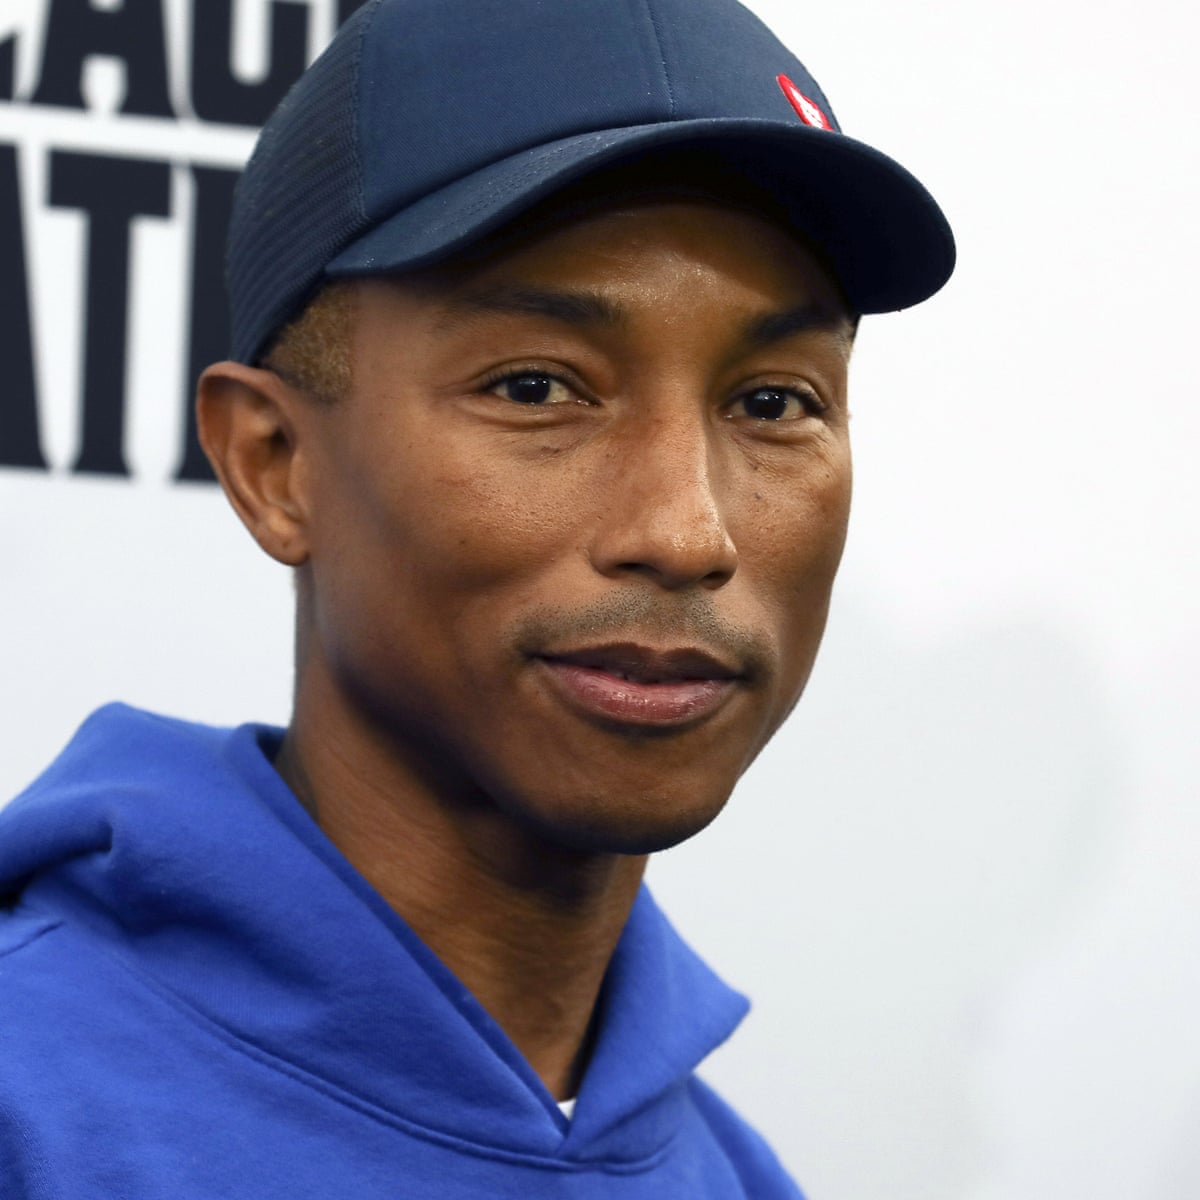 Pharrell Williams announces gender-neutral skincare line, Pharrell Williams